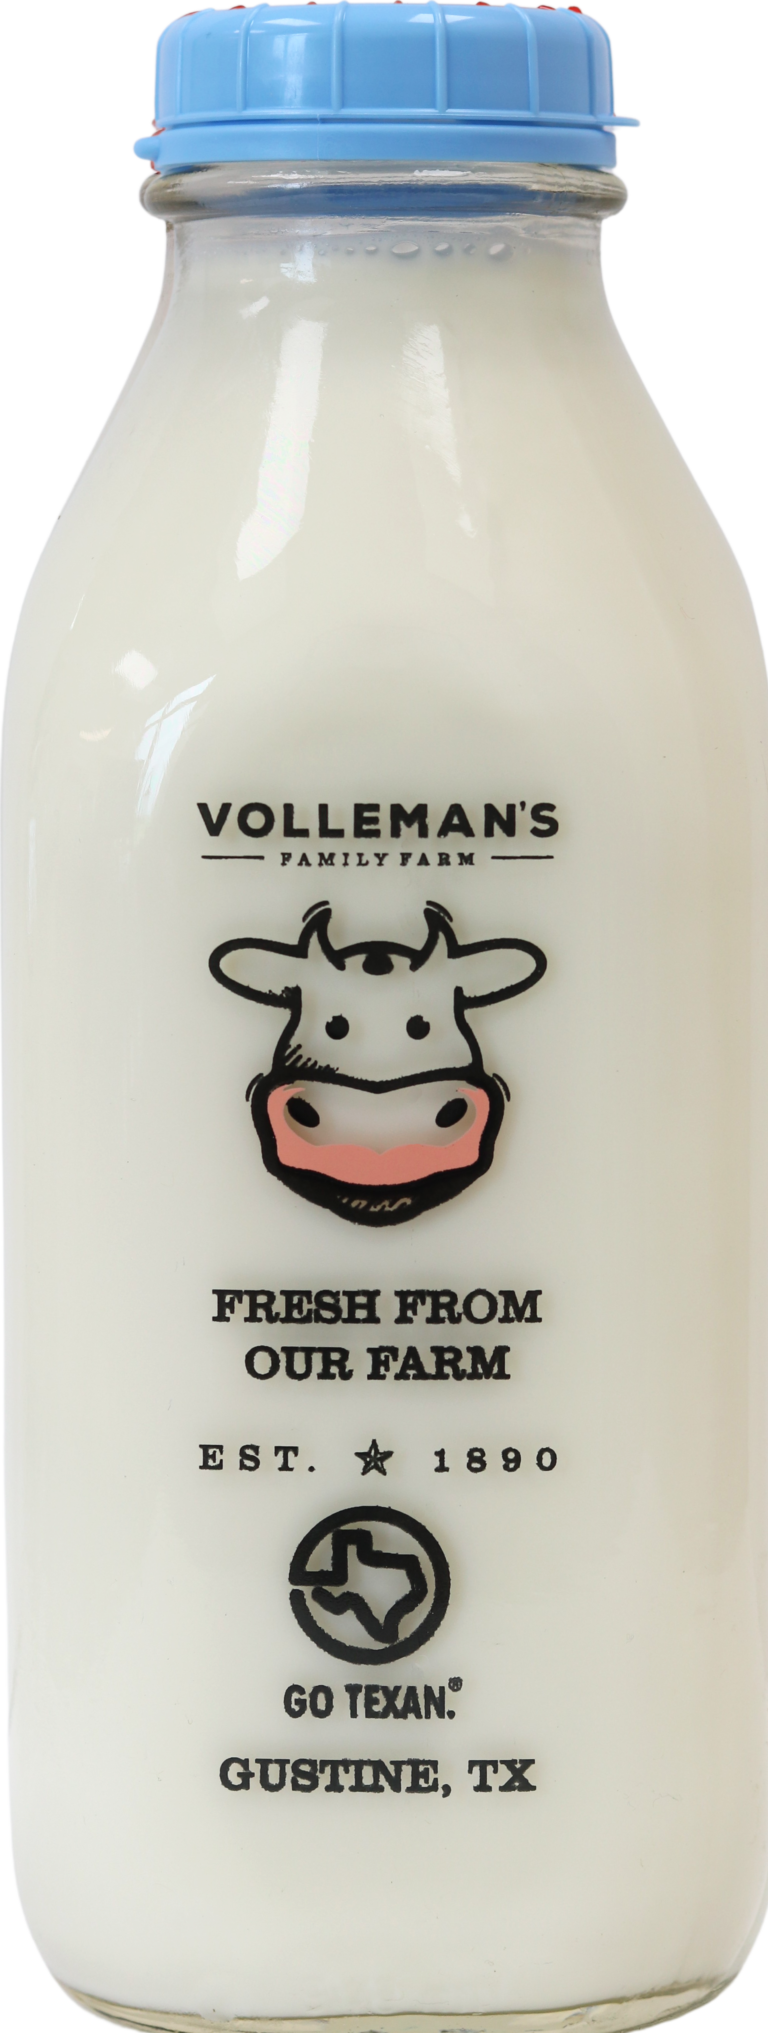 Volleman's 2% milk